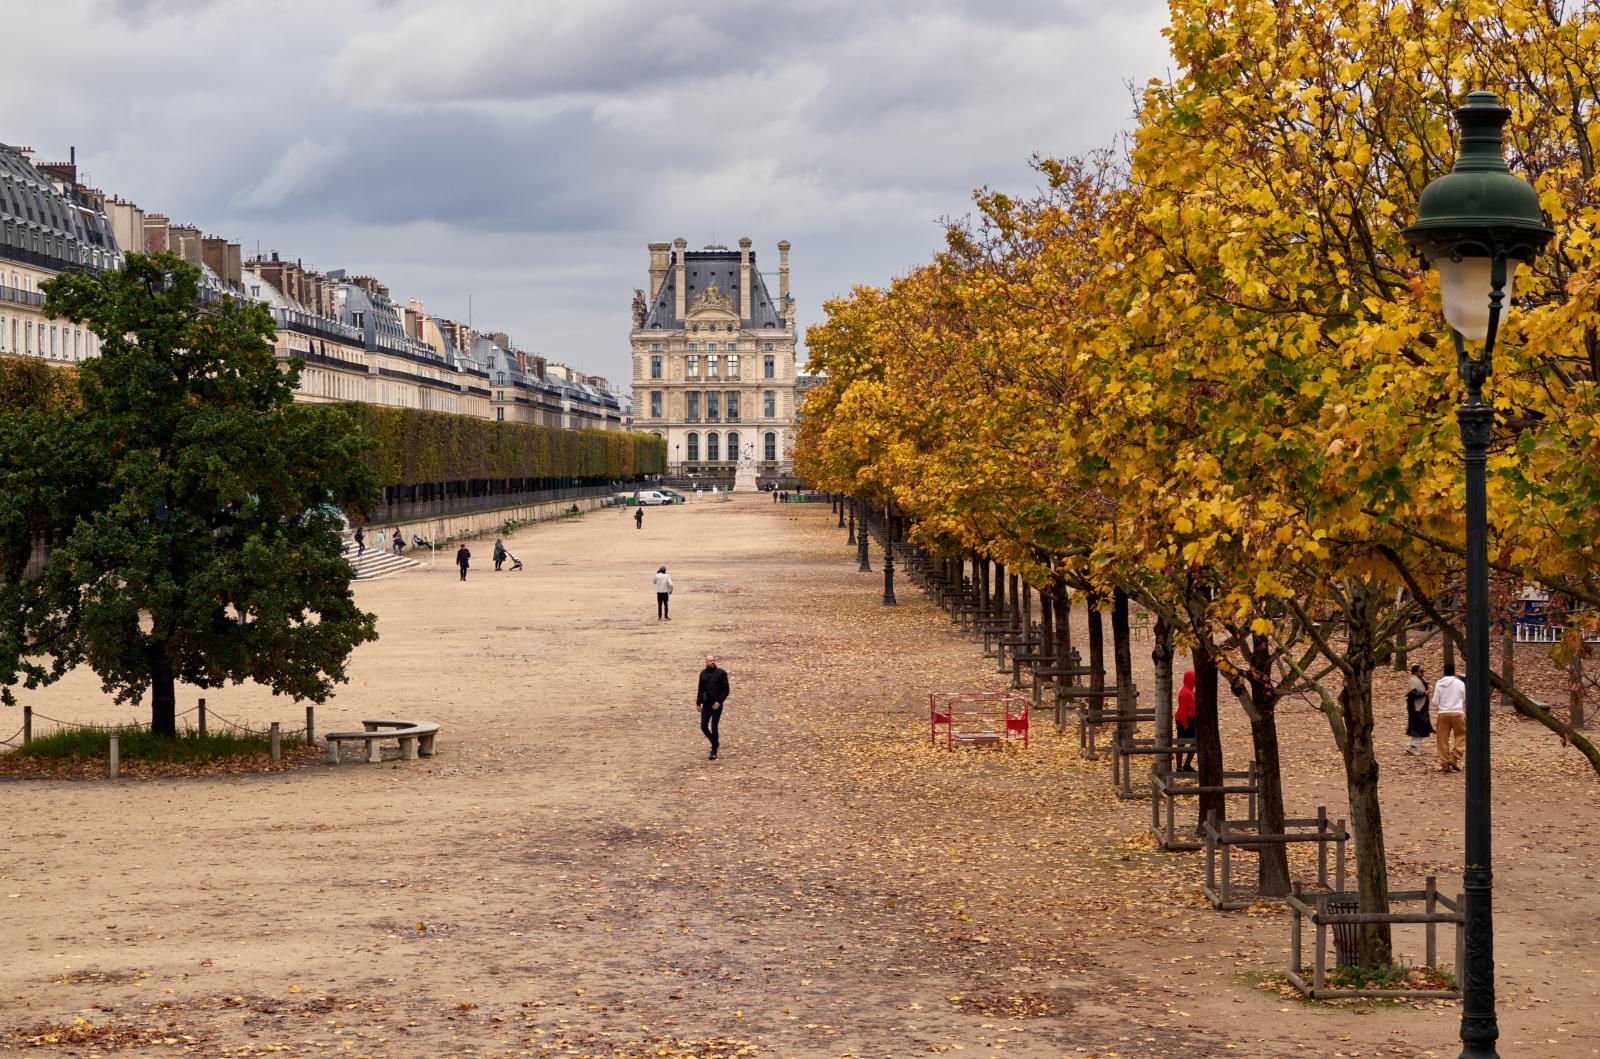 Autumn in Le Jardin des Tuileries in Paris | Buy this image